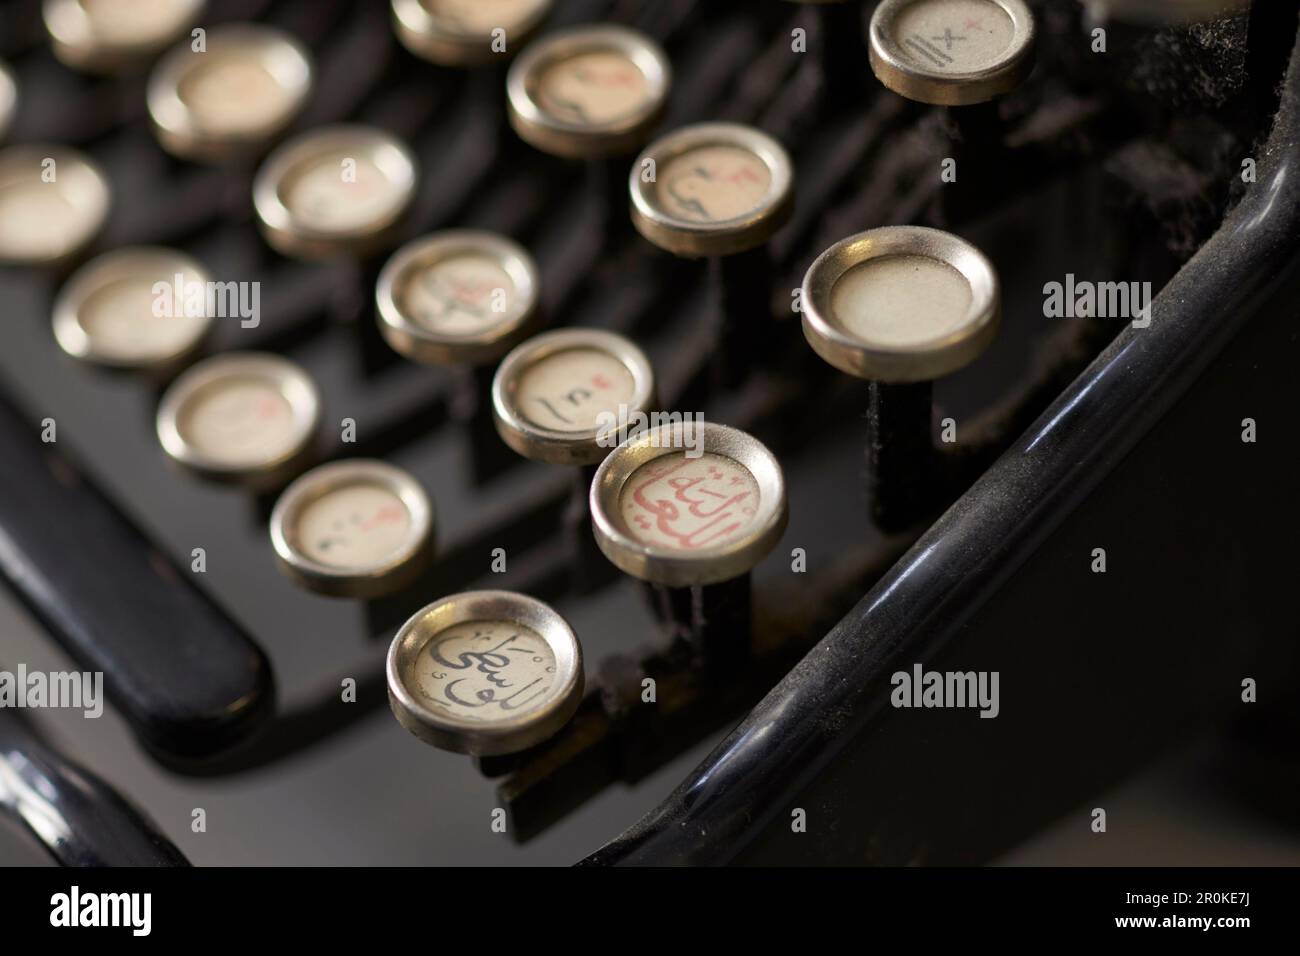 Historische Schreibmaschine mit arabischen Zeichen, nostalgisch Stockfoto